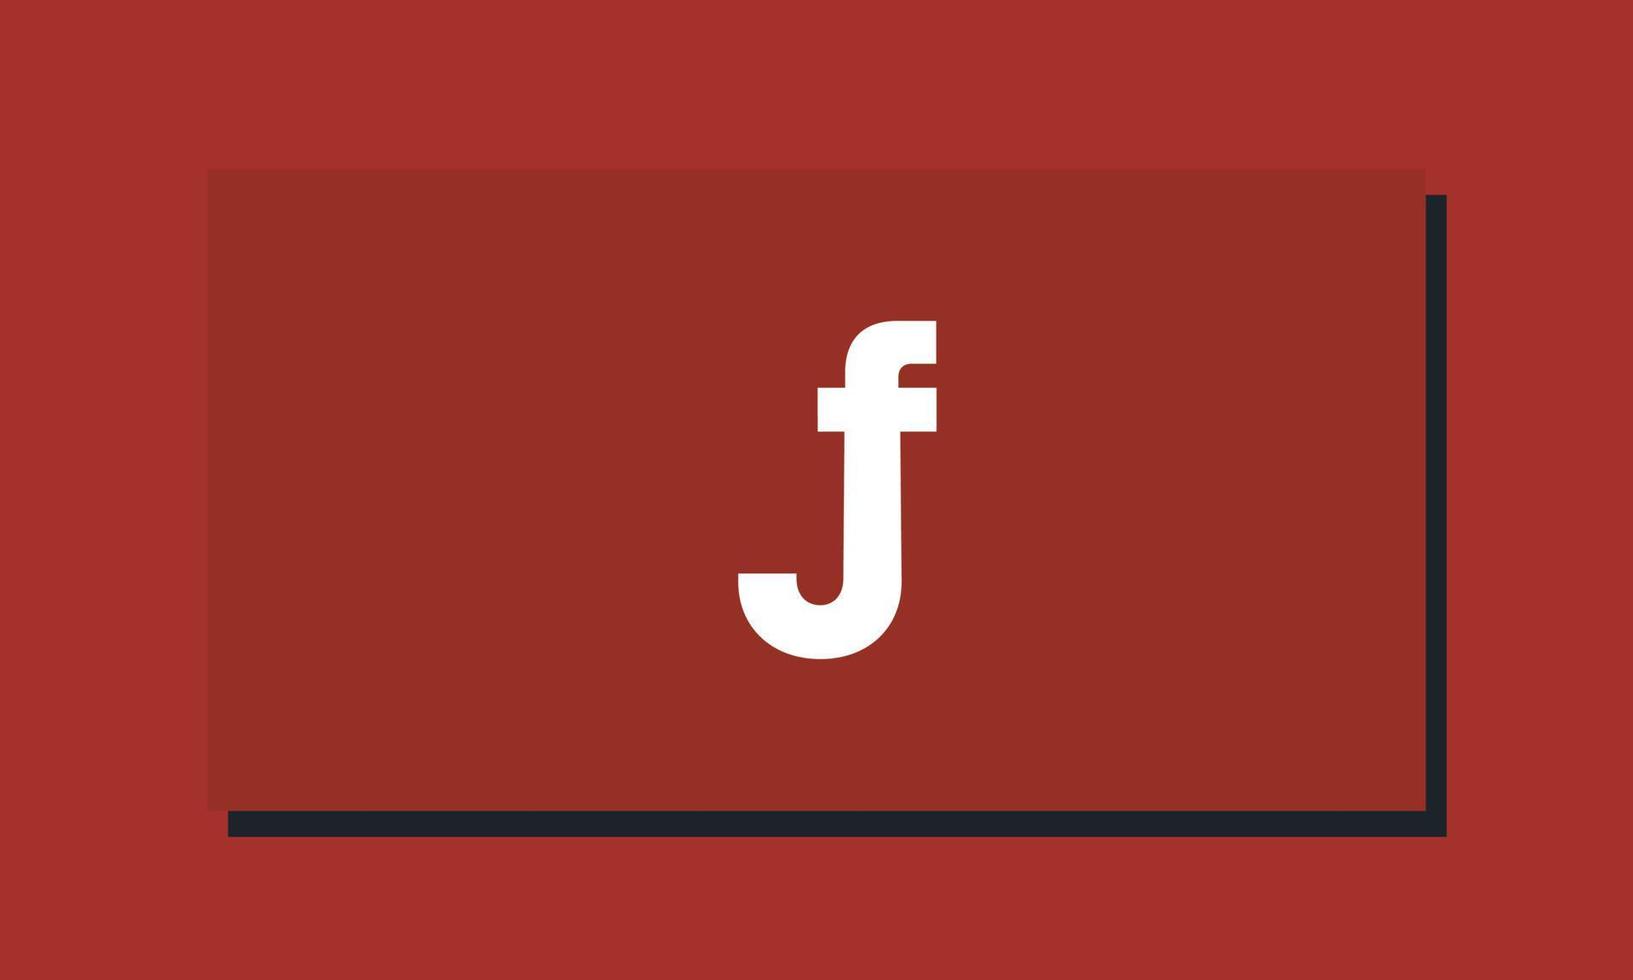 letras do alfabeto iniciais monograma logotipo jf, fj, j e f vetor